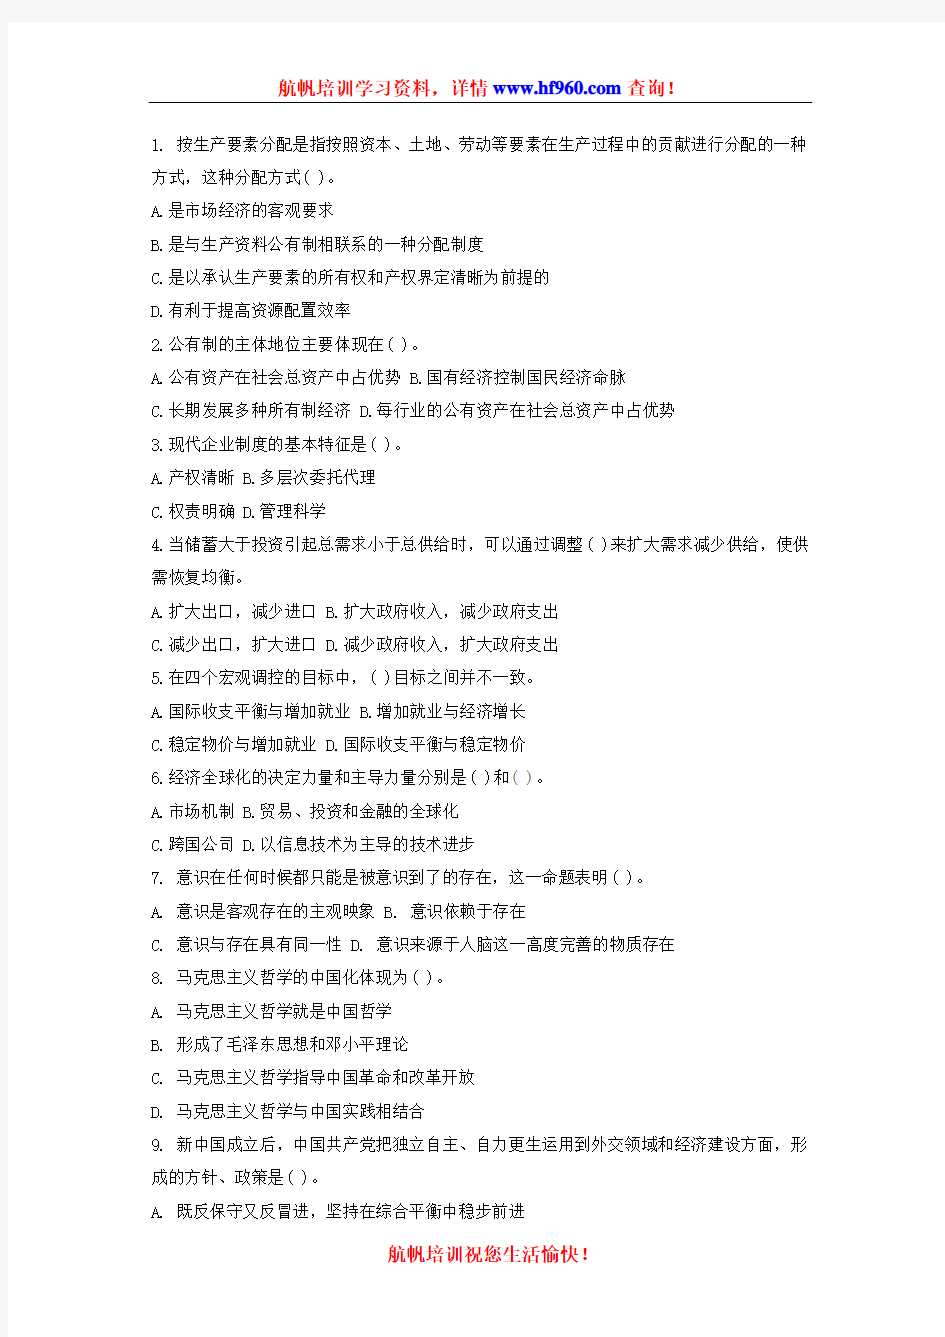 2014年丽江事业单位工作人员招录考试知识题